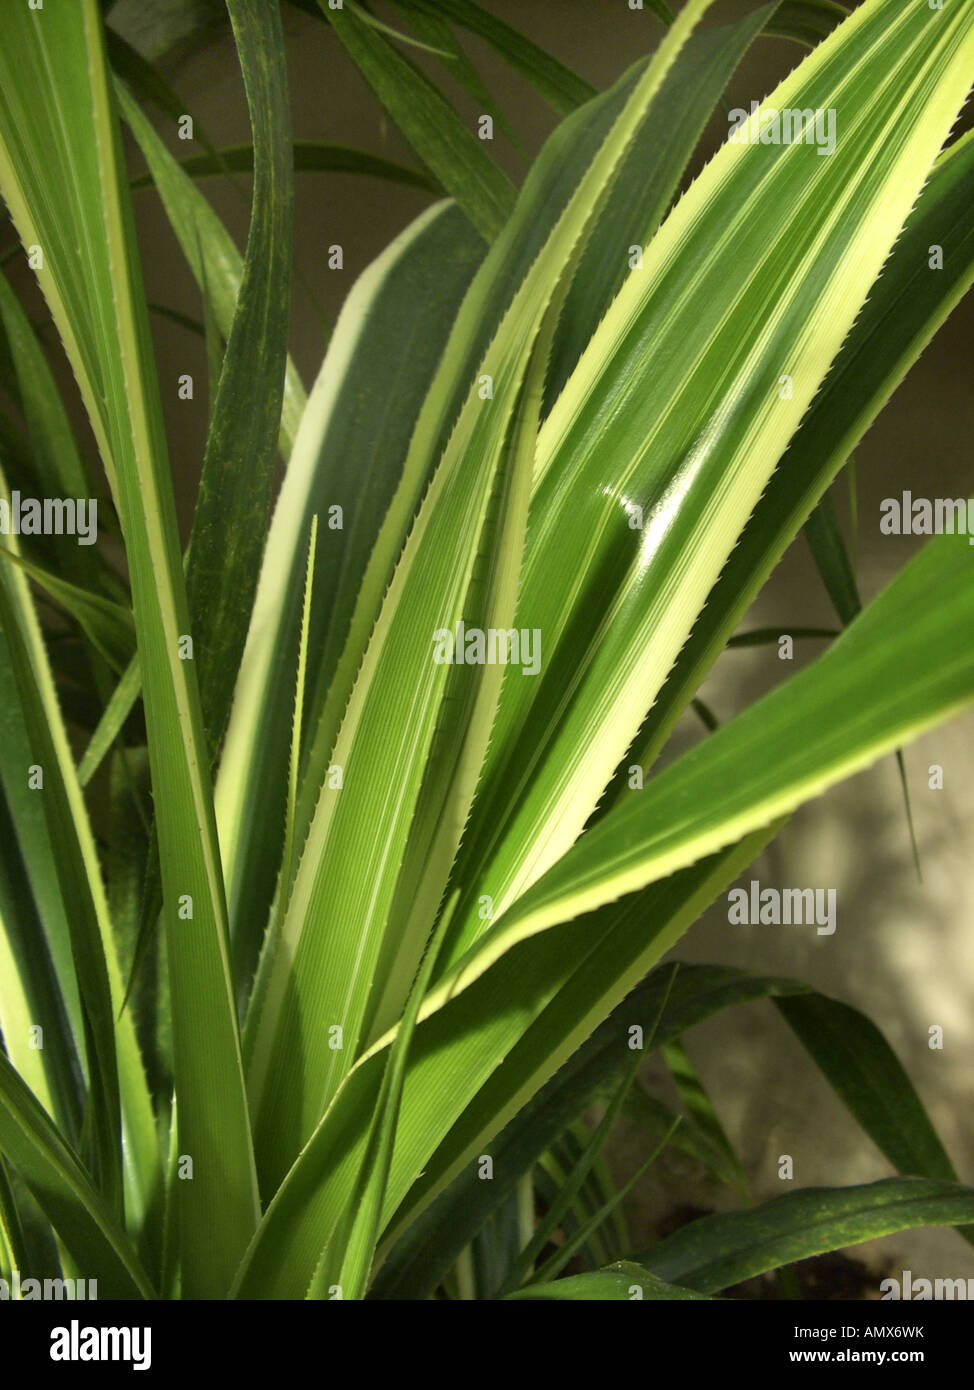 pahong (Pandanus veitchii), leaves Stock Photo